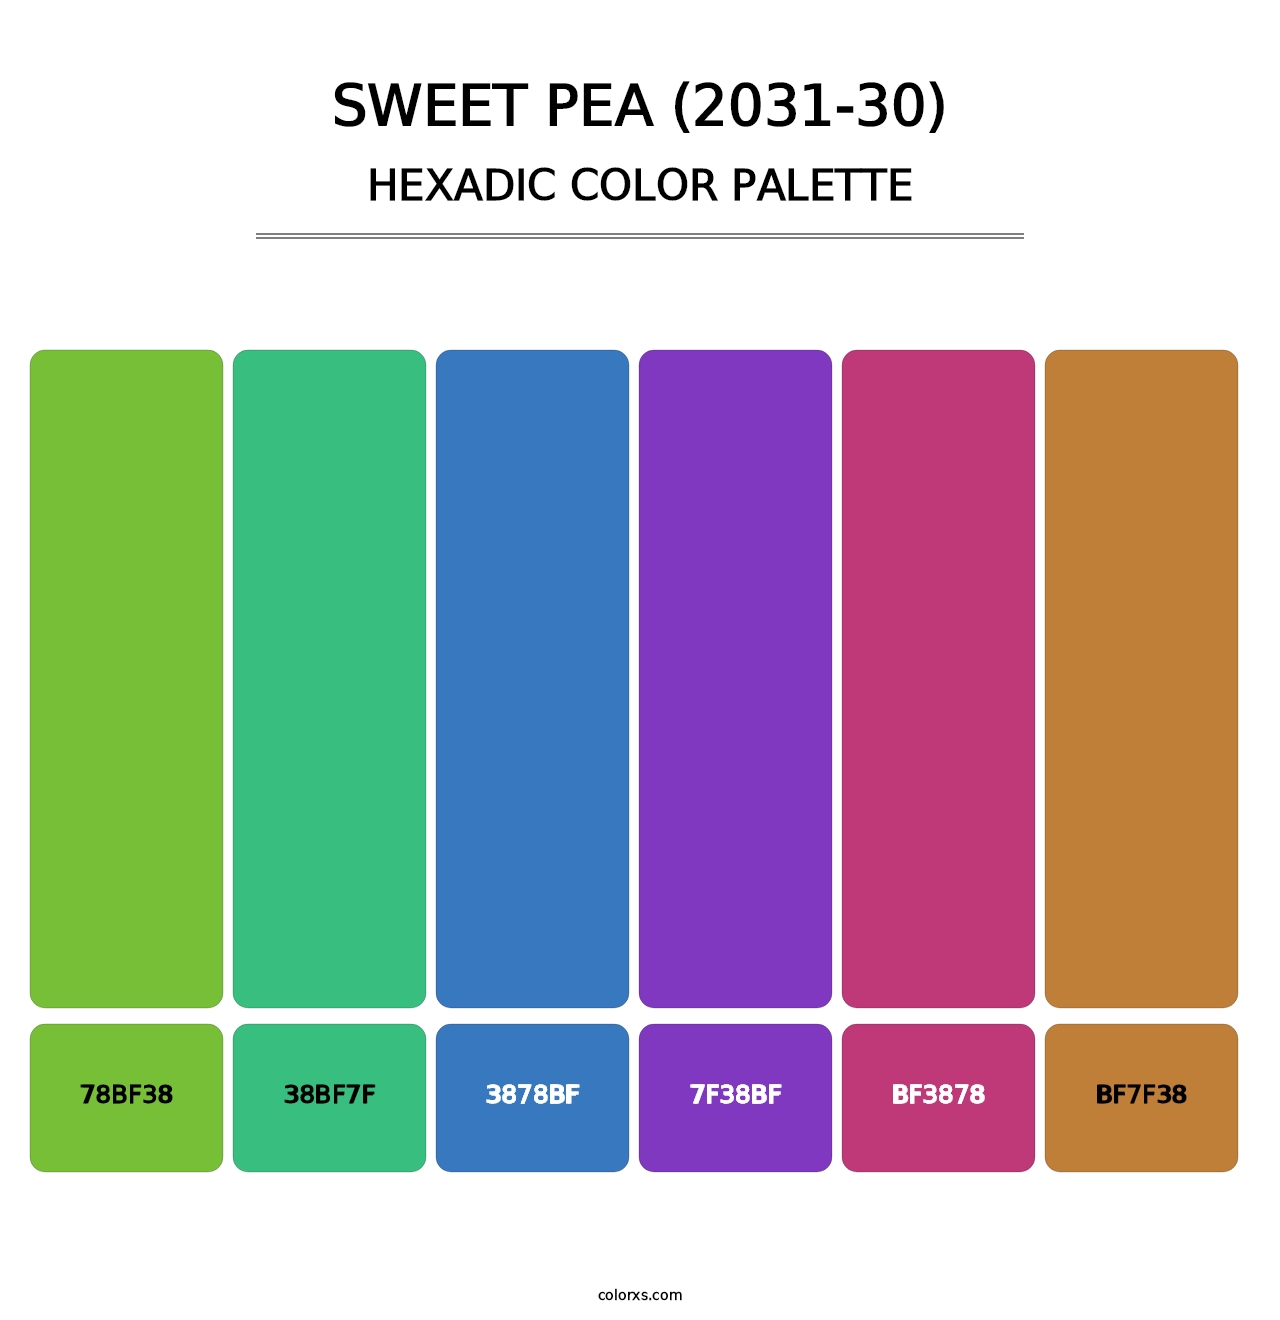 Sweet Pea (2031-30) - Hexadic Color Palette